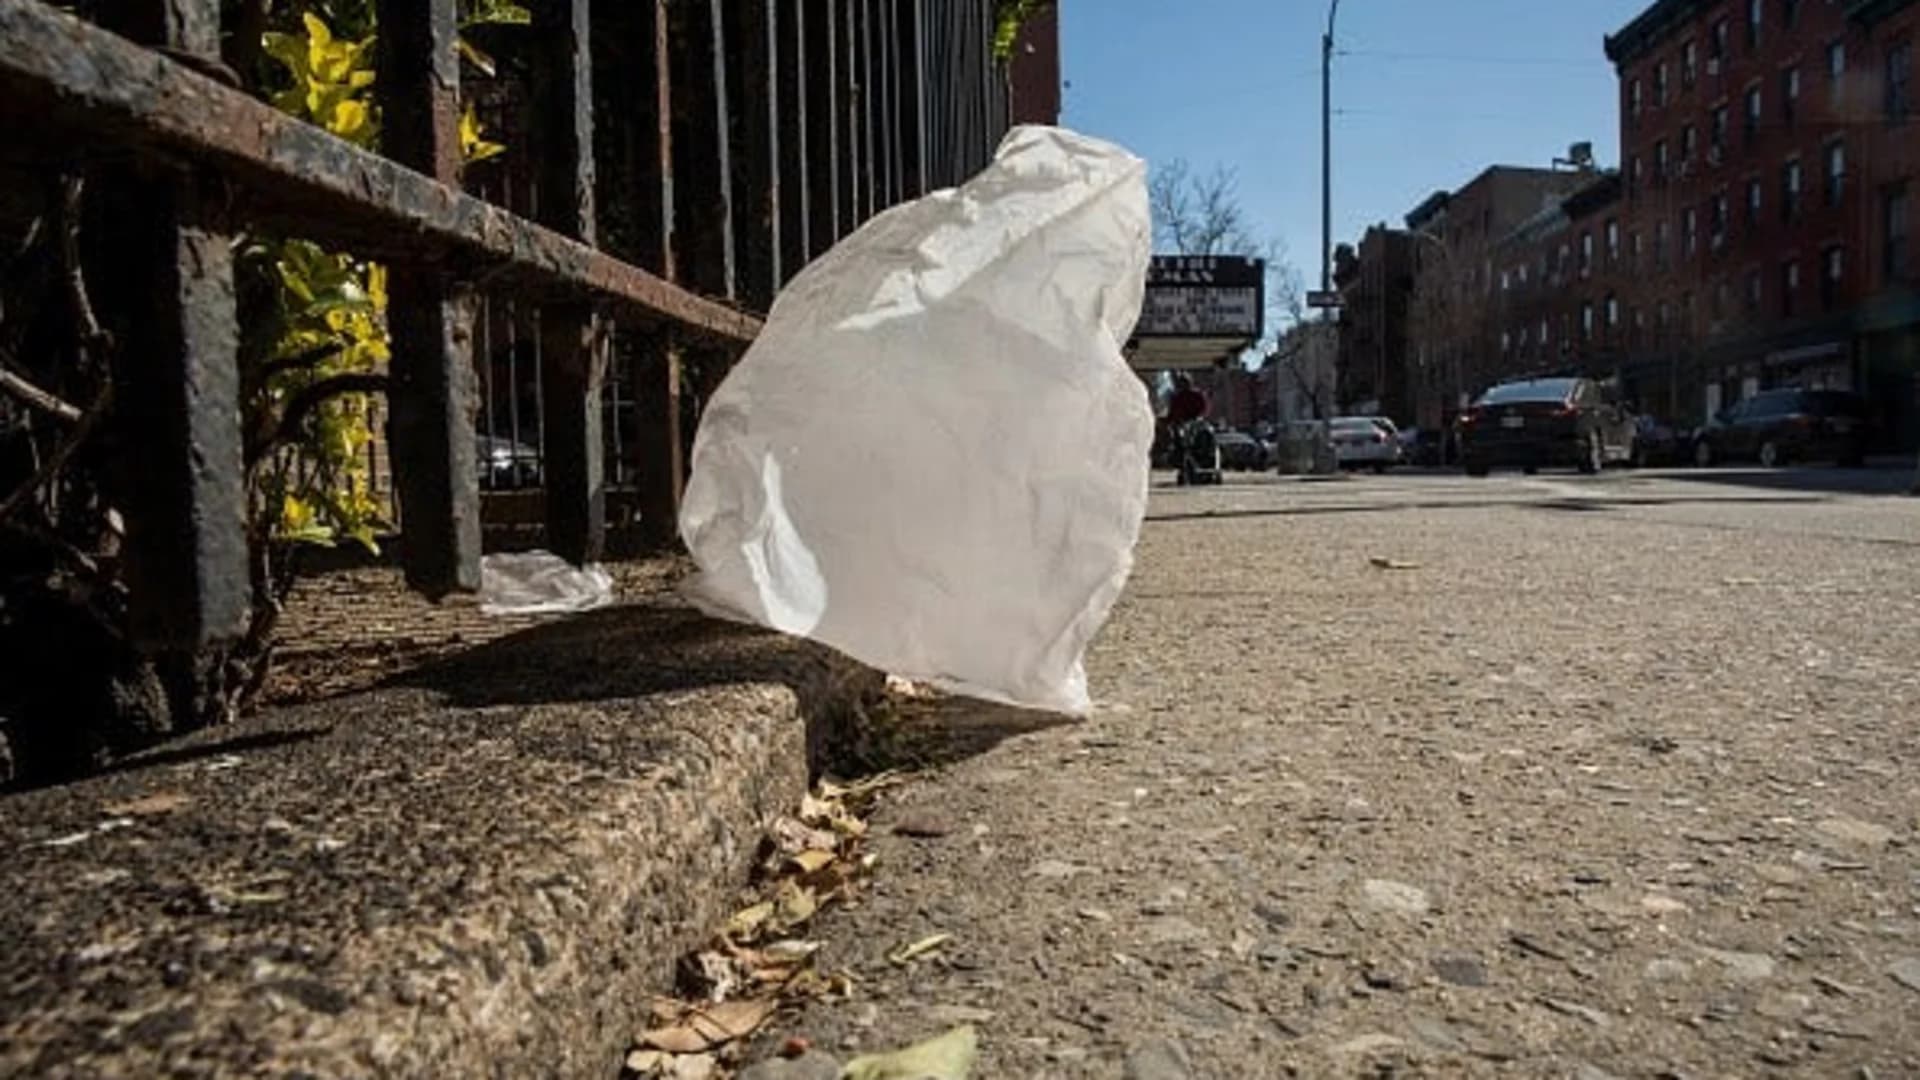 #N12BK: Plastic bag ban